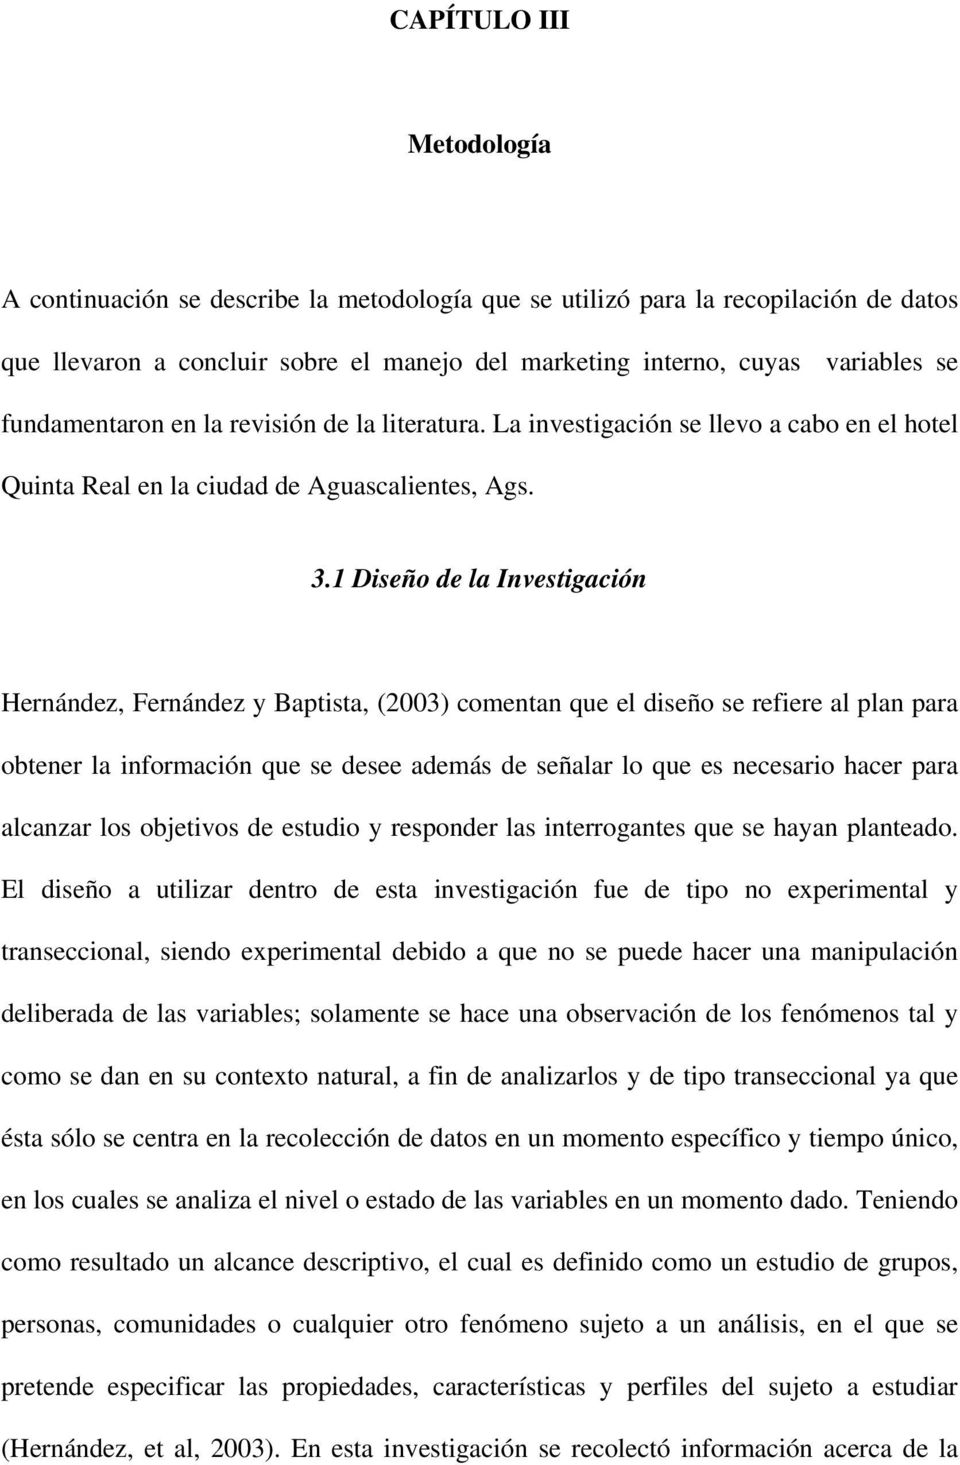 1 Diseño de la Investigación Hernández, Fernández y Baptista, (2003) comentan que el diseño se refiere al plan para obtener la información que se desee además de señalar lo que es necesario hacer